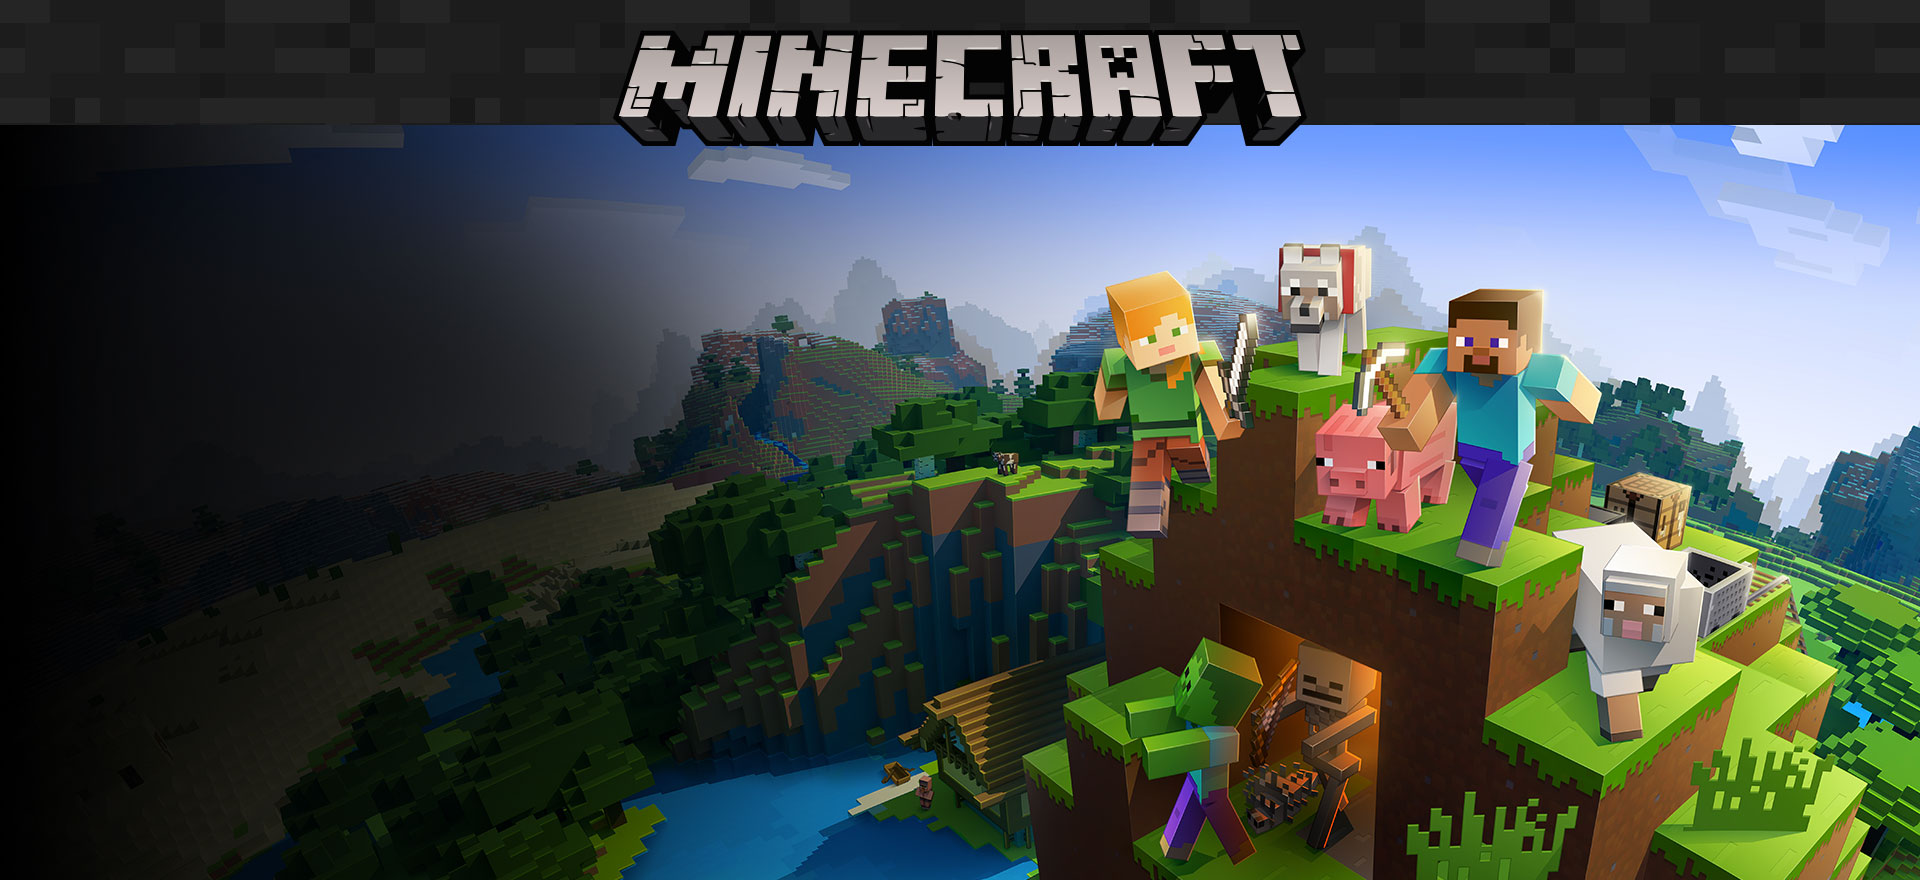 Продажи Minecraft более 200 миллионов, 126 миллионов человек играют ежемесячно 86